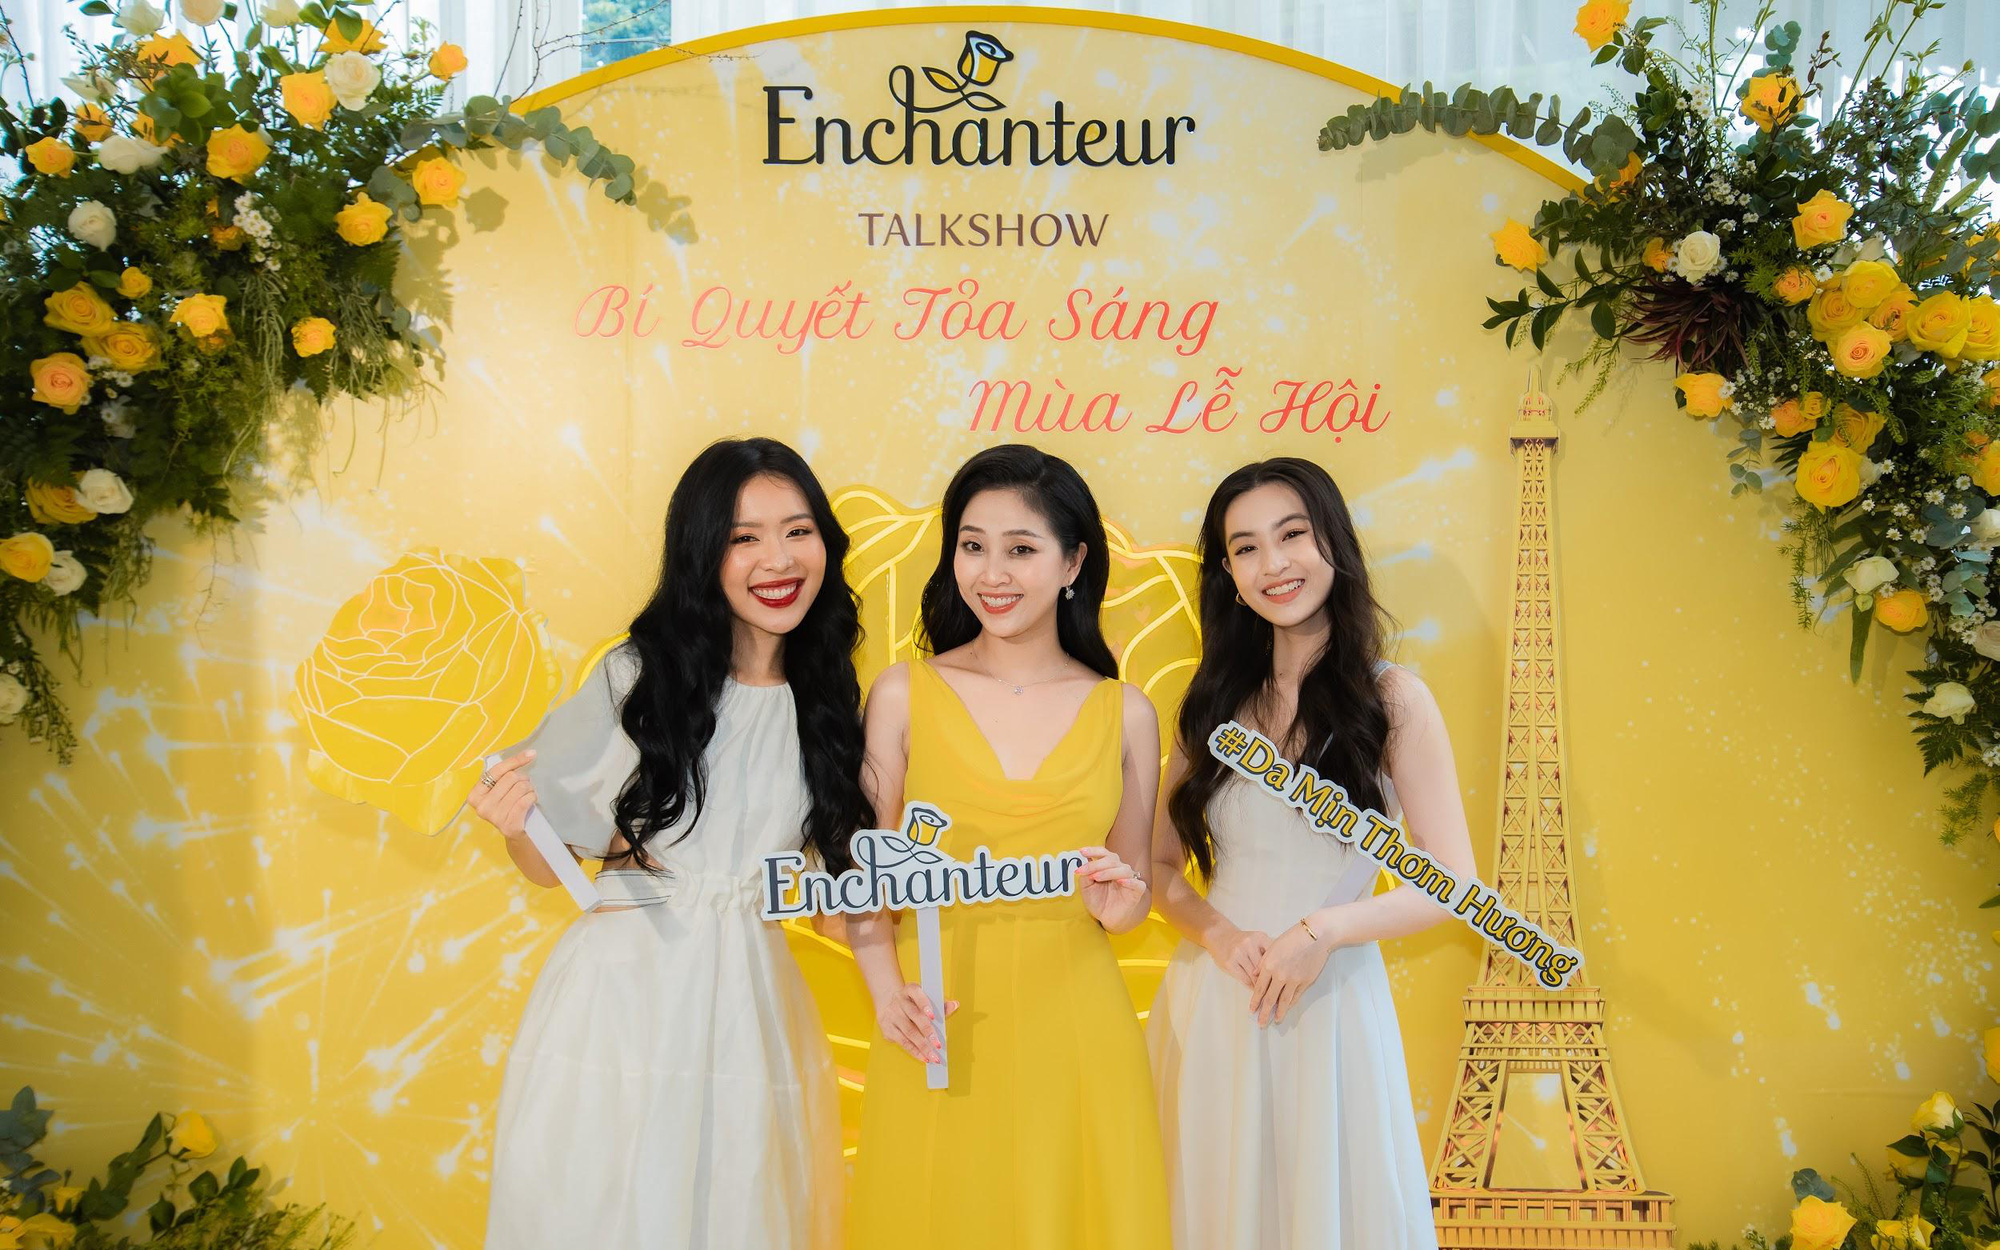 Thảo Tâm, An Phương, Liêu Hà Trinh cùng nhau trò chuyện về bí quyết tỏa sáng mùa lễ hội với Enchanteur